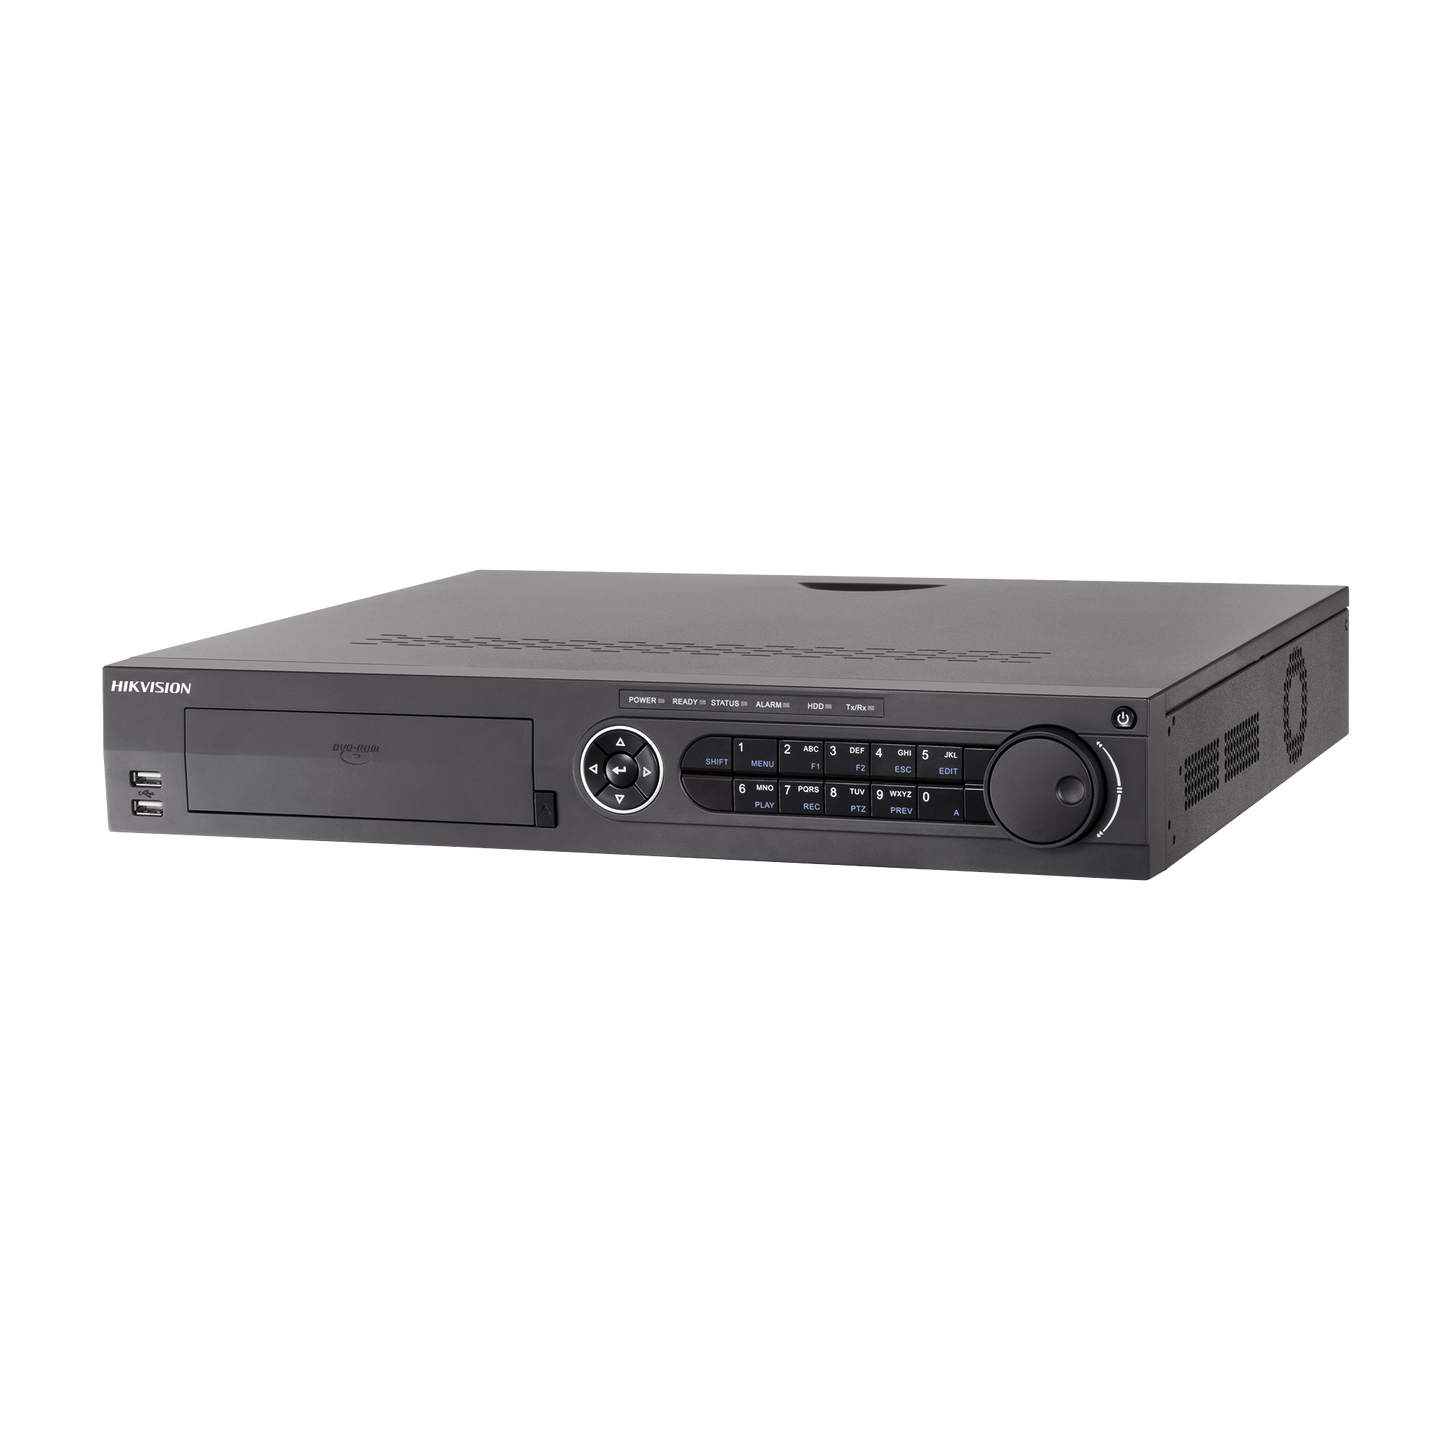 DVR 32 Canales TurboHD + 32 Canales IP / 8 Megapixel (4K) / 4 Bahías de Disco Duro / Audio por coaxitron / RAID 0,1,5,6,10 / POS / Acusense / 16 Entradas de Alarma